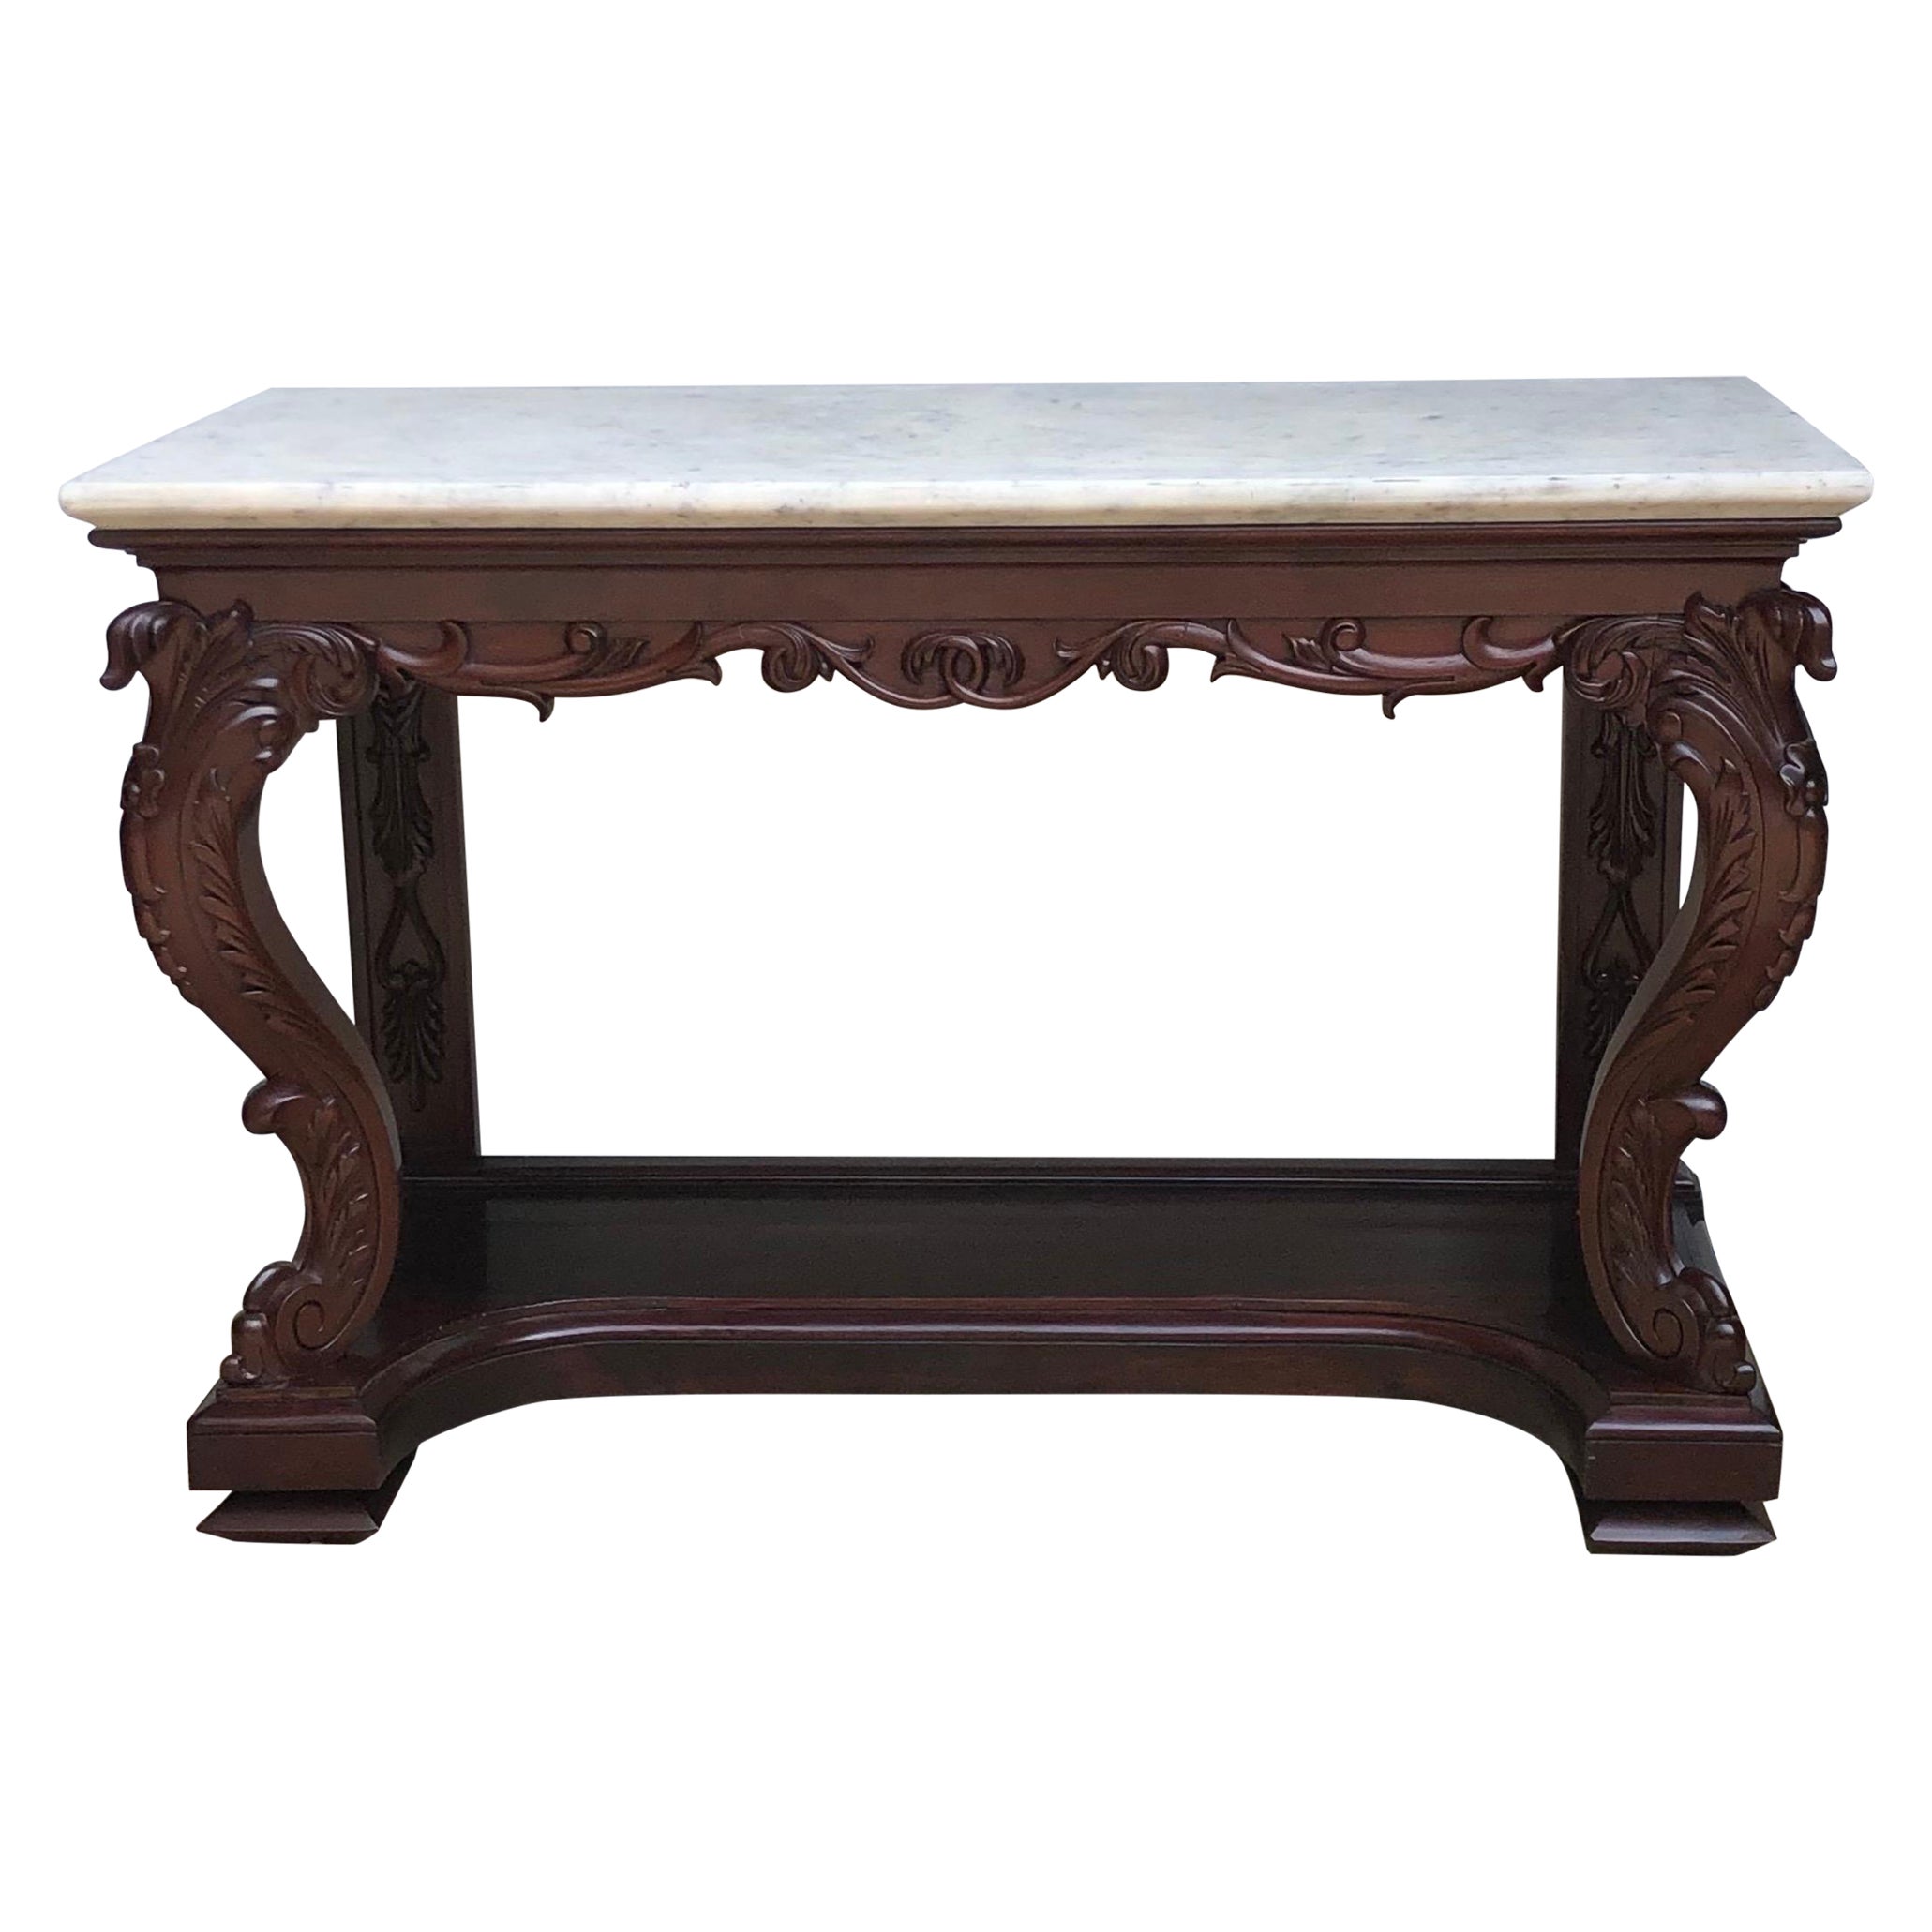 Table console anglo-indienne en acajou avec plateau en marbre, estampillée J M EDMOND CALCUTTA